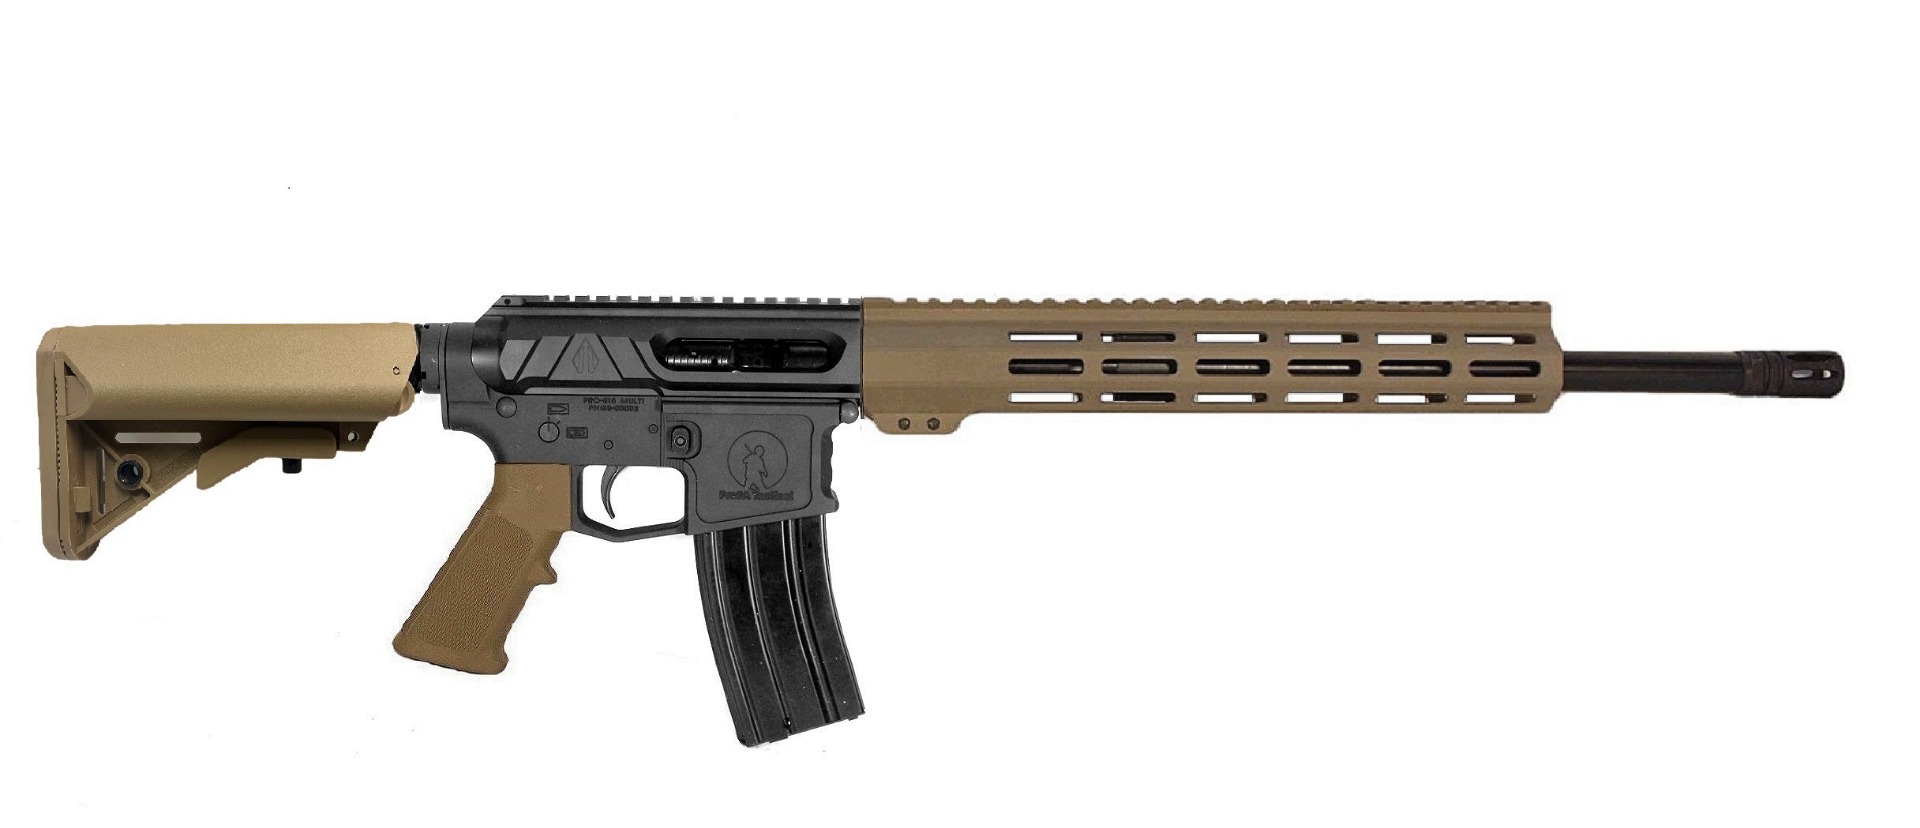 16" 300 BLKOUT Valiant AR Rifle